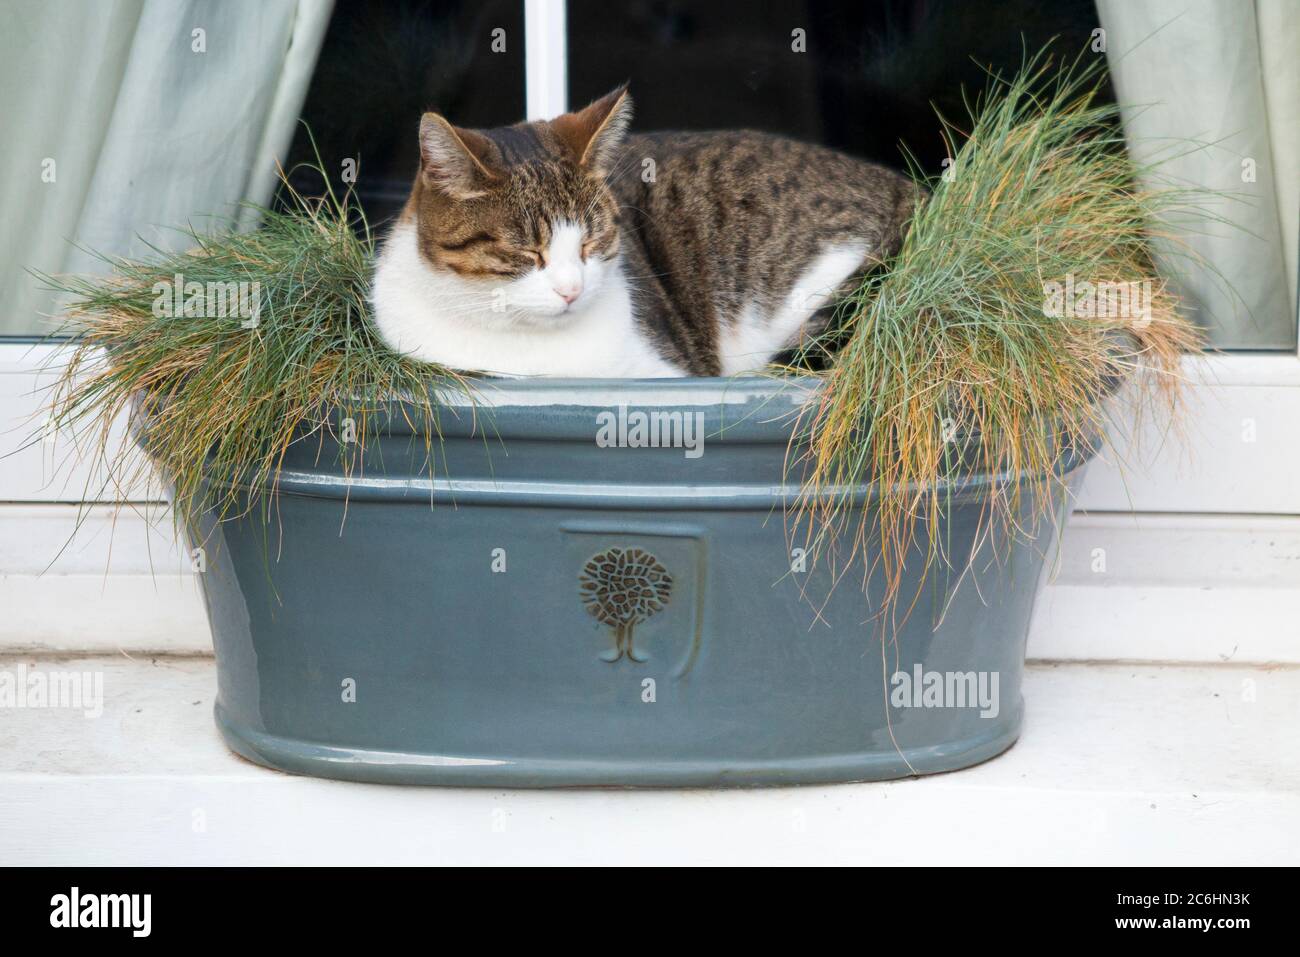 Joven gato sentado rondando, durmiendo, y aplastando las plantas en la caja de la ventana en el alféizar. La caja de la ventana es a prueba de heladas pero no a prueba de gatos. Inglaterra Reino Unido (116) Foto de stock